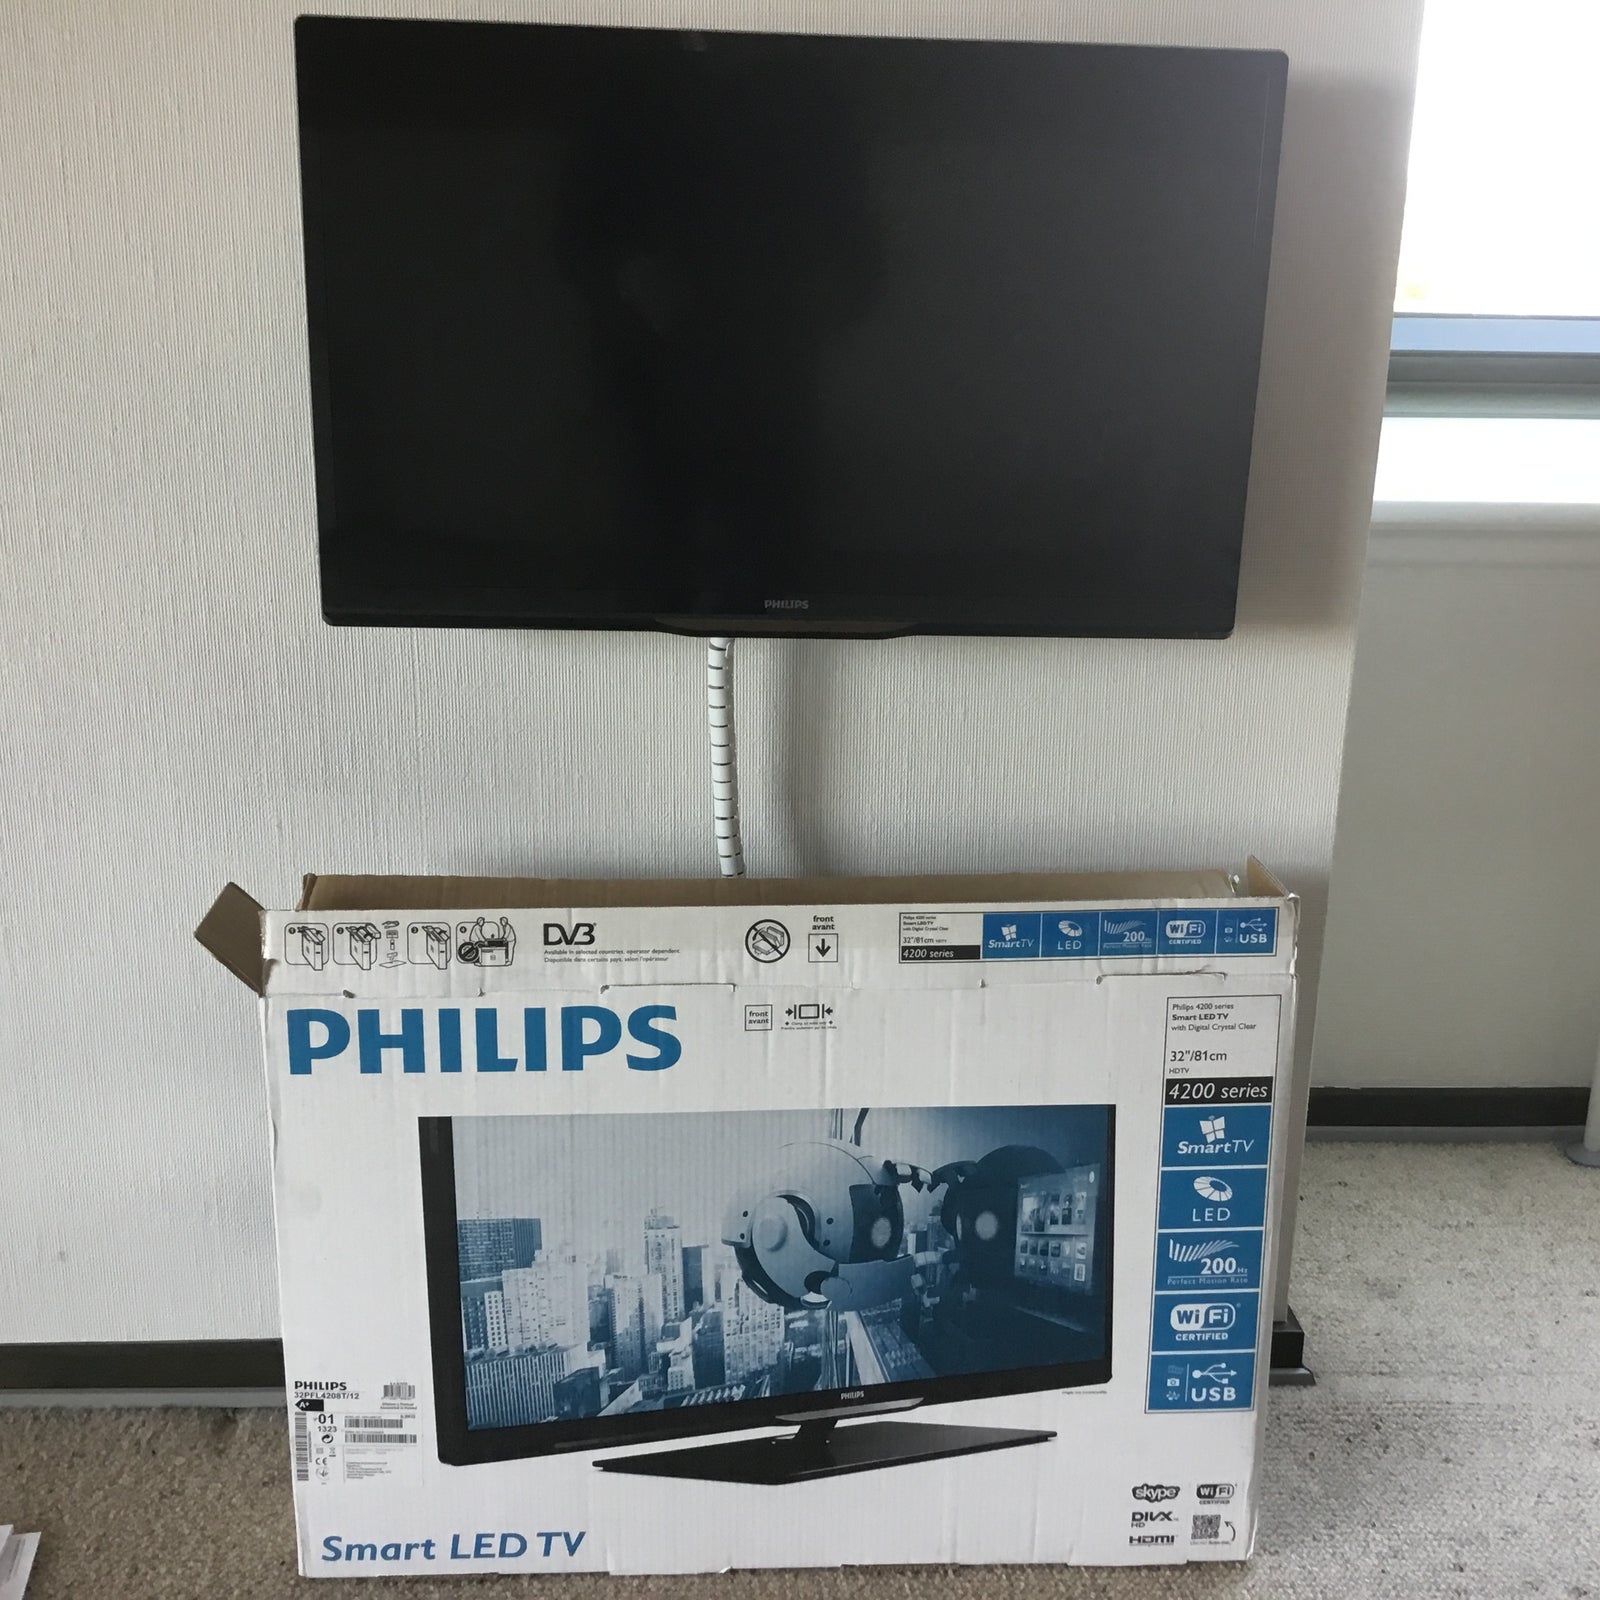 LED, Philips, 4200 smart LED TV